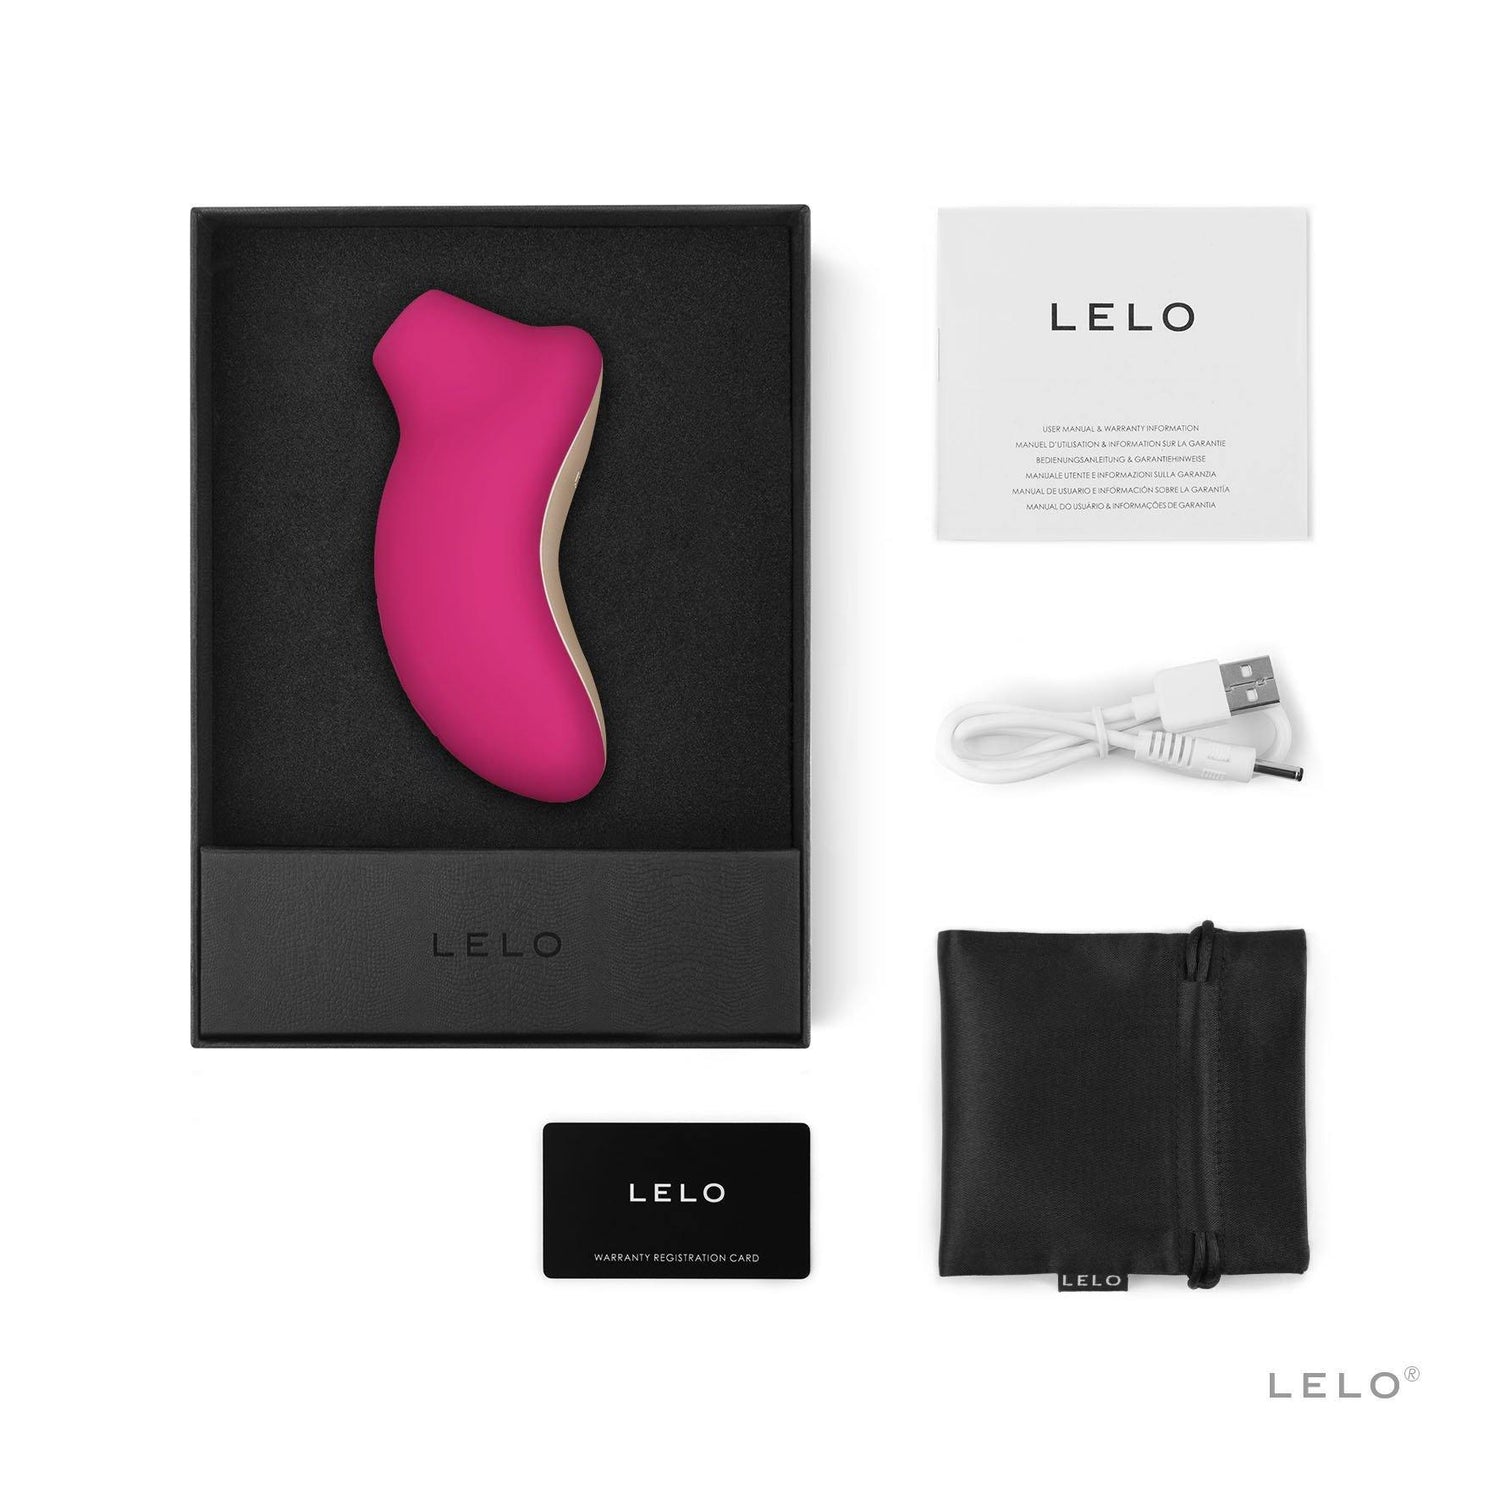 Sona klitoris vibrator fra svenske Lelo